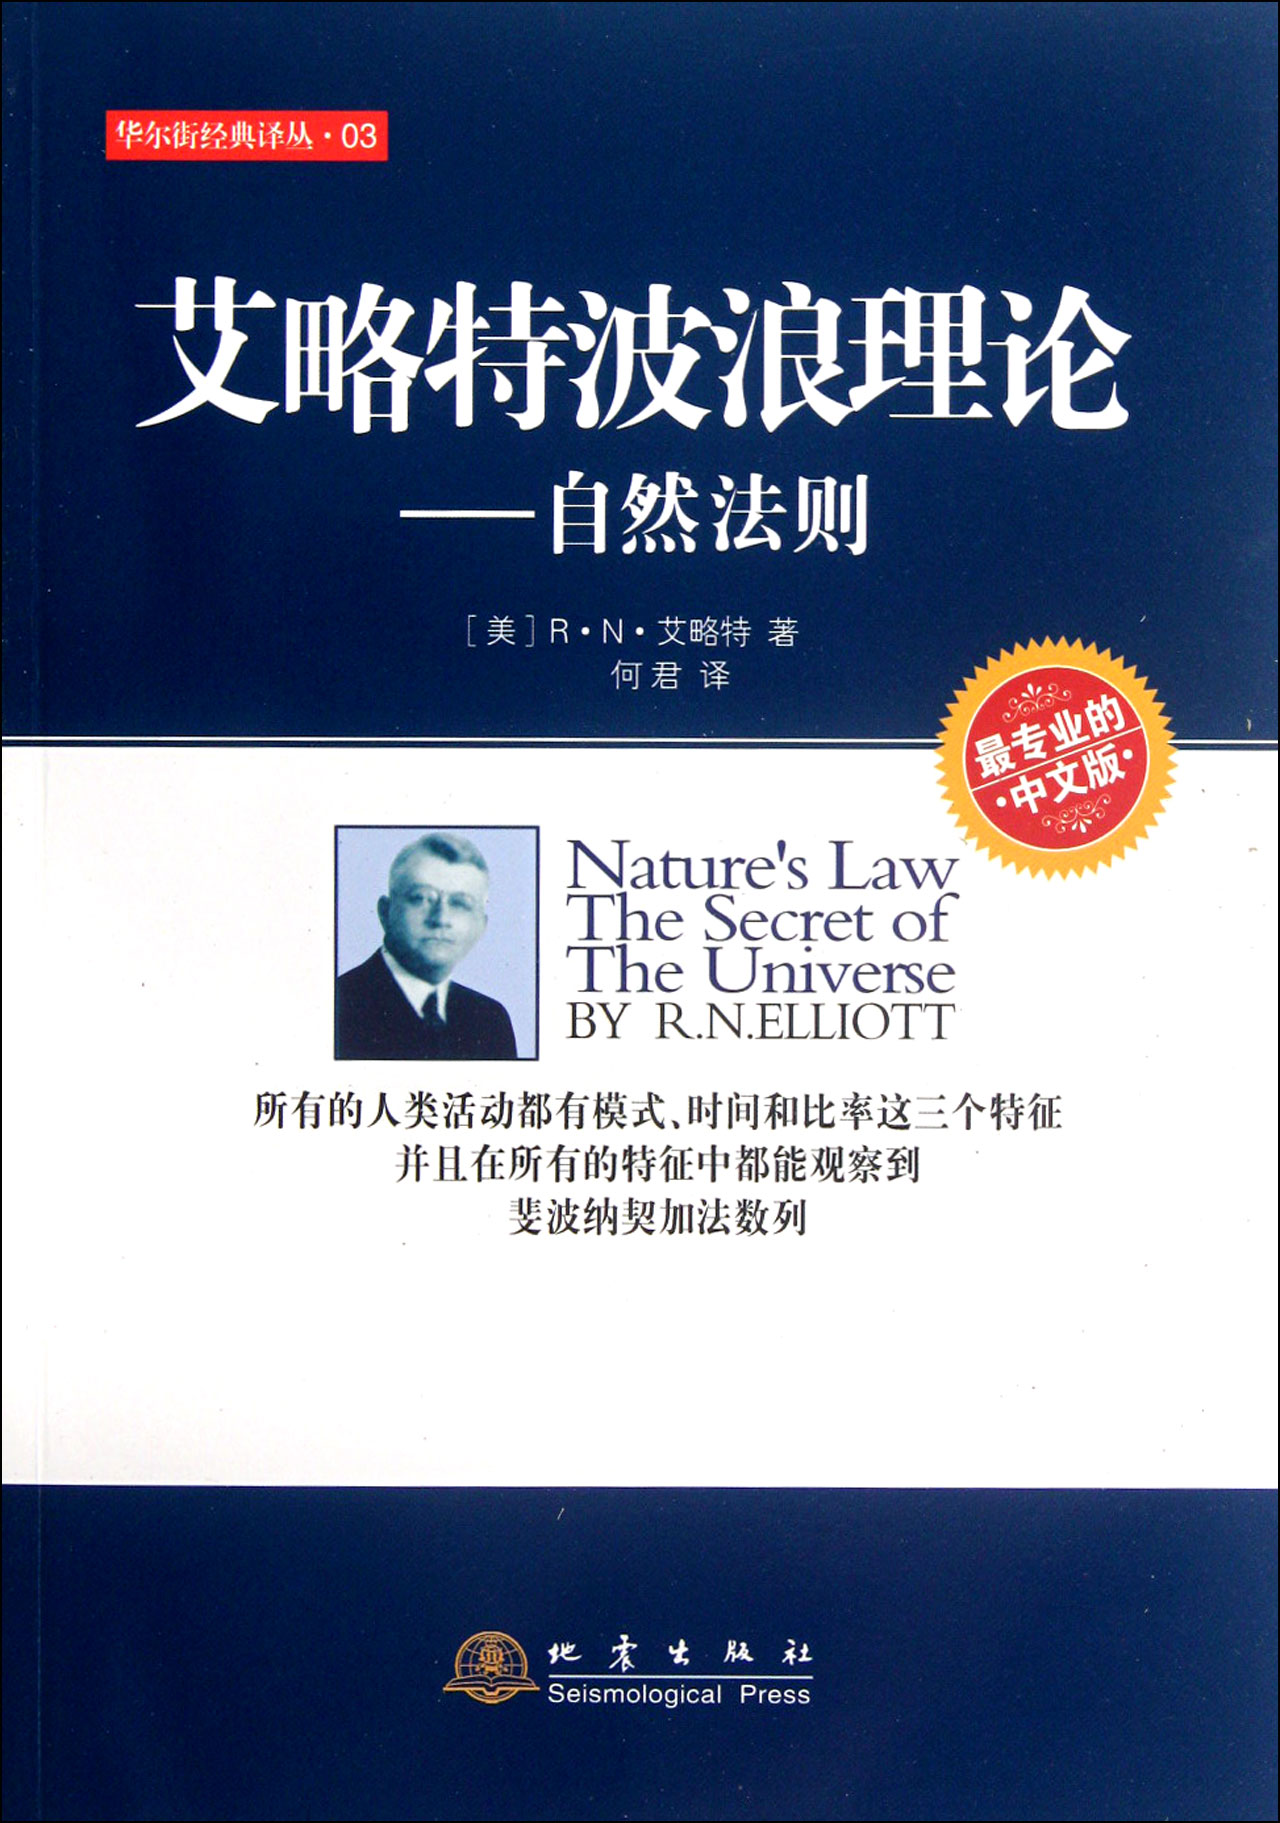 艾略特波浪理论--自然法则(最专业的中文版)